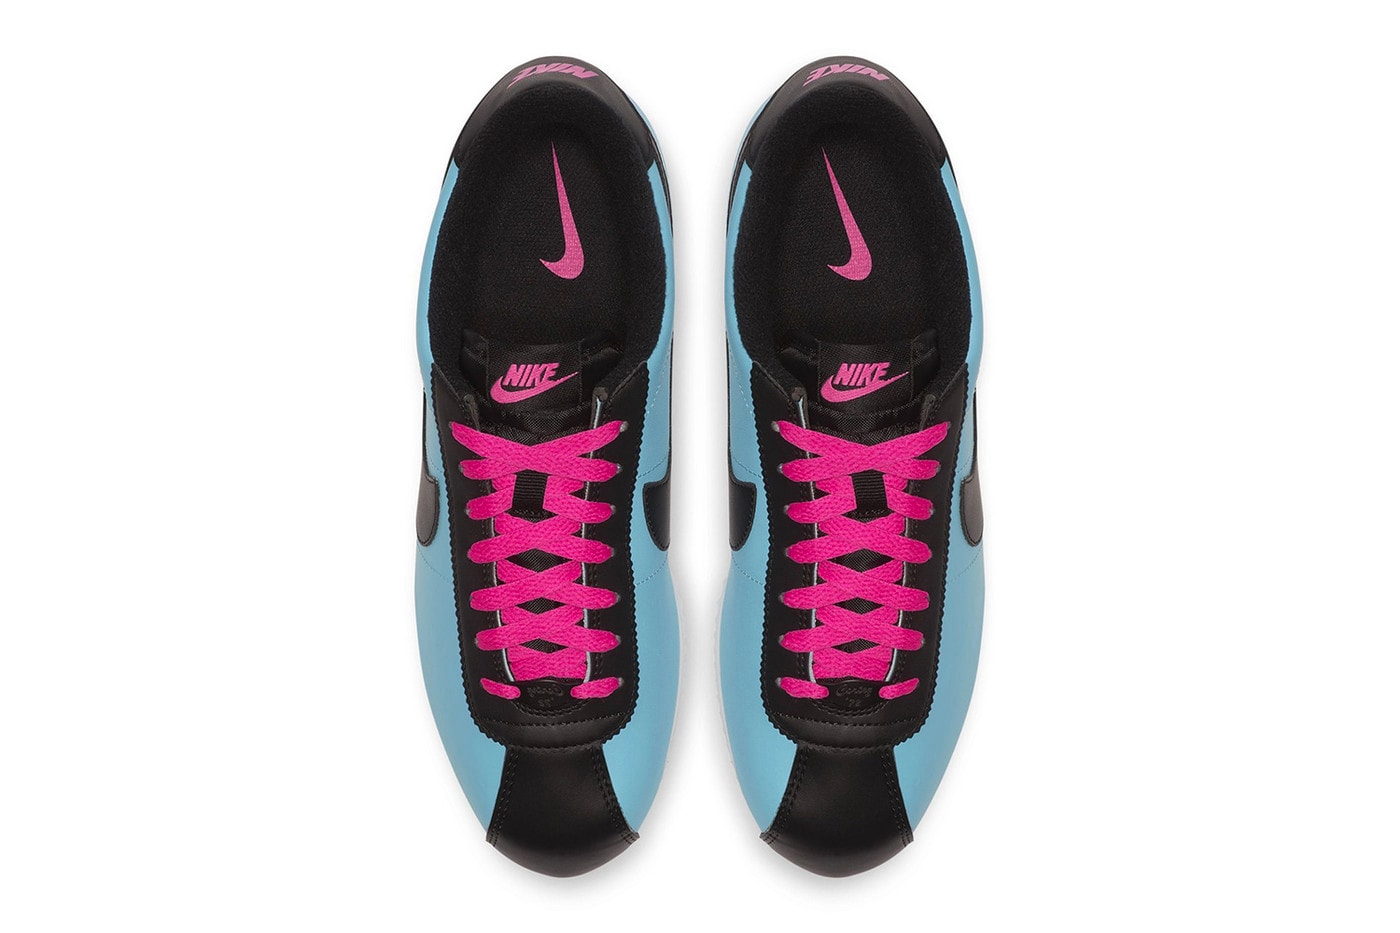 Nike Cortez Blue Gale/Laser Fuchsia White/Black Sneaker Blue Pink Shoe Footwear Fall Winter Trainer Crep